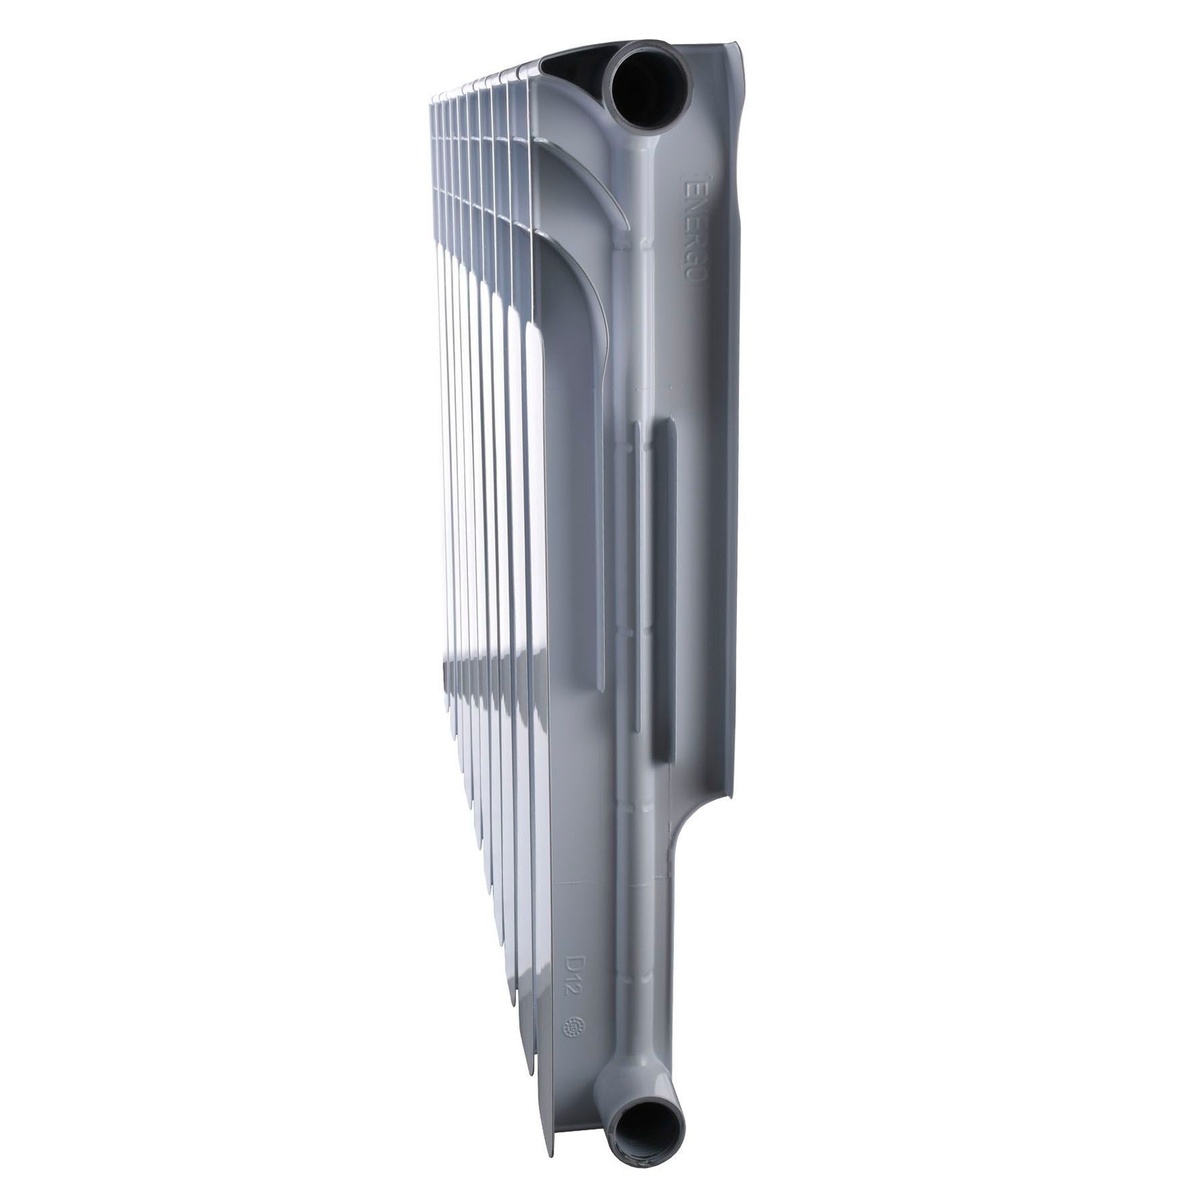 Биметаллический радиатор отопления ENERGO BIDEEP 545x78 мм боковое подключение секционный 000020261 (продажа от 10шт)